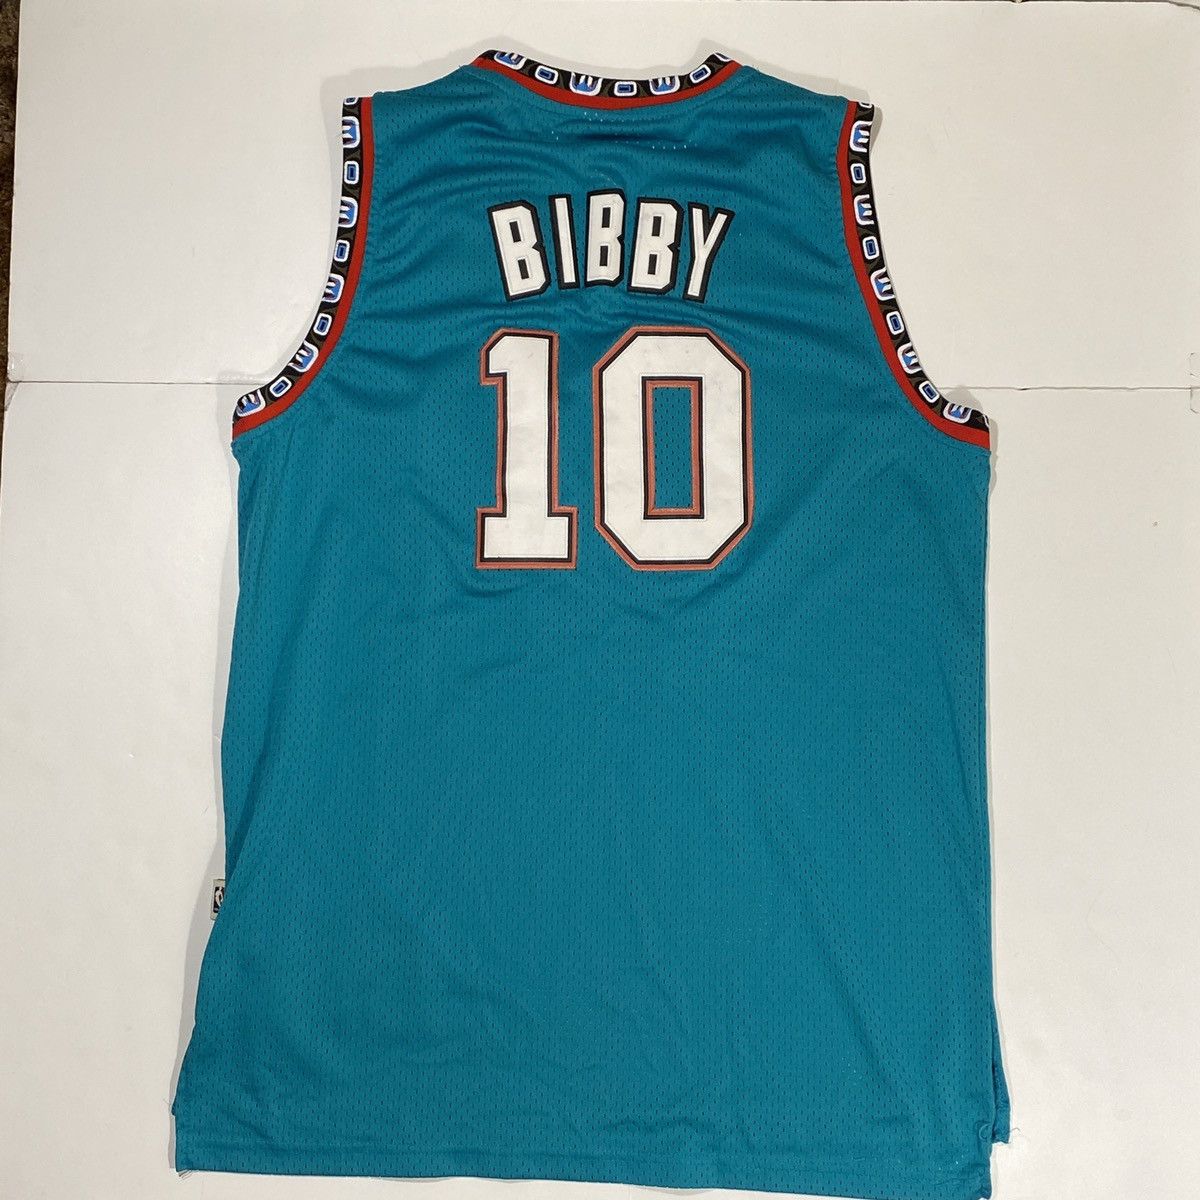 Vintage Vintage NBA Grizzlies Mike Bibby Jersey Size US XL / EU 56 / 4 - 3 Thumbnail